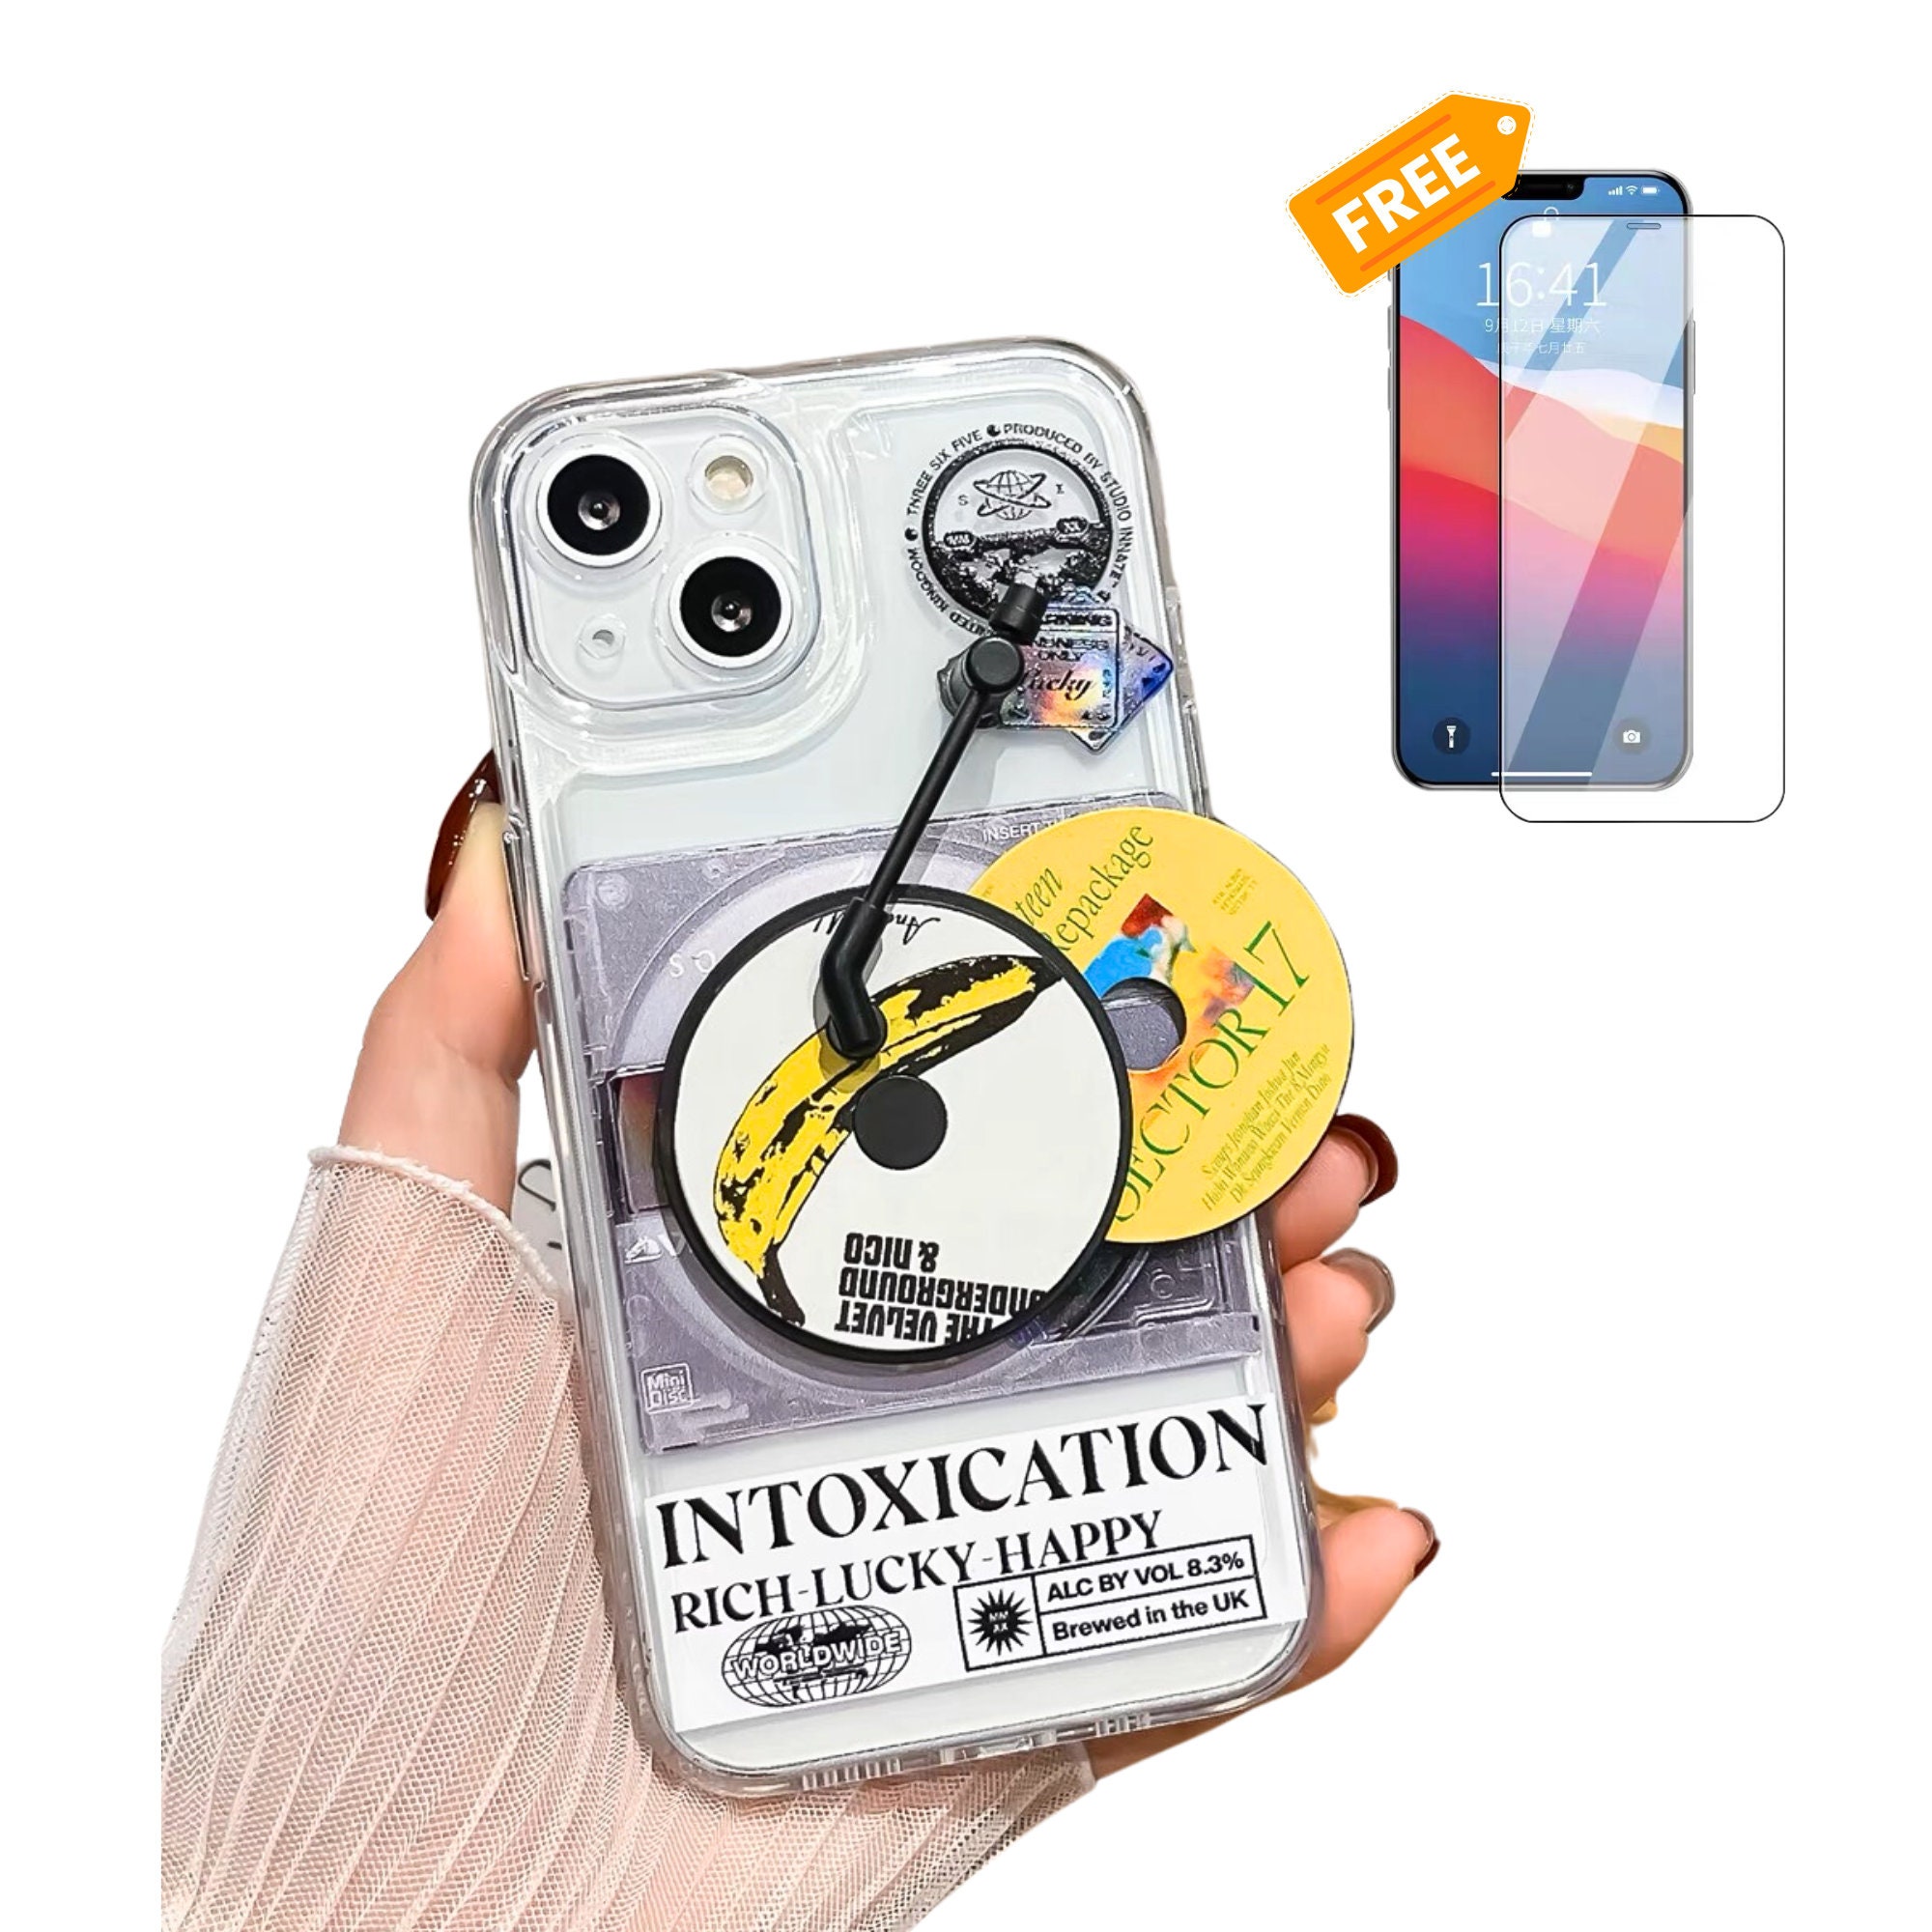 Crazy Glue Cute Super Glue Pun, Phone Case iPhone X / XS